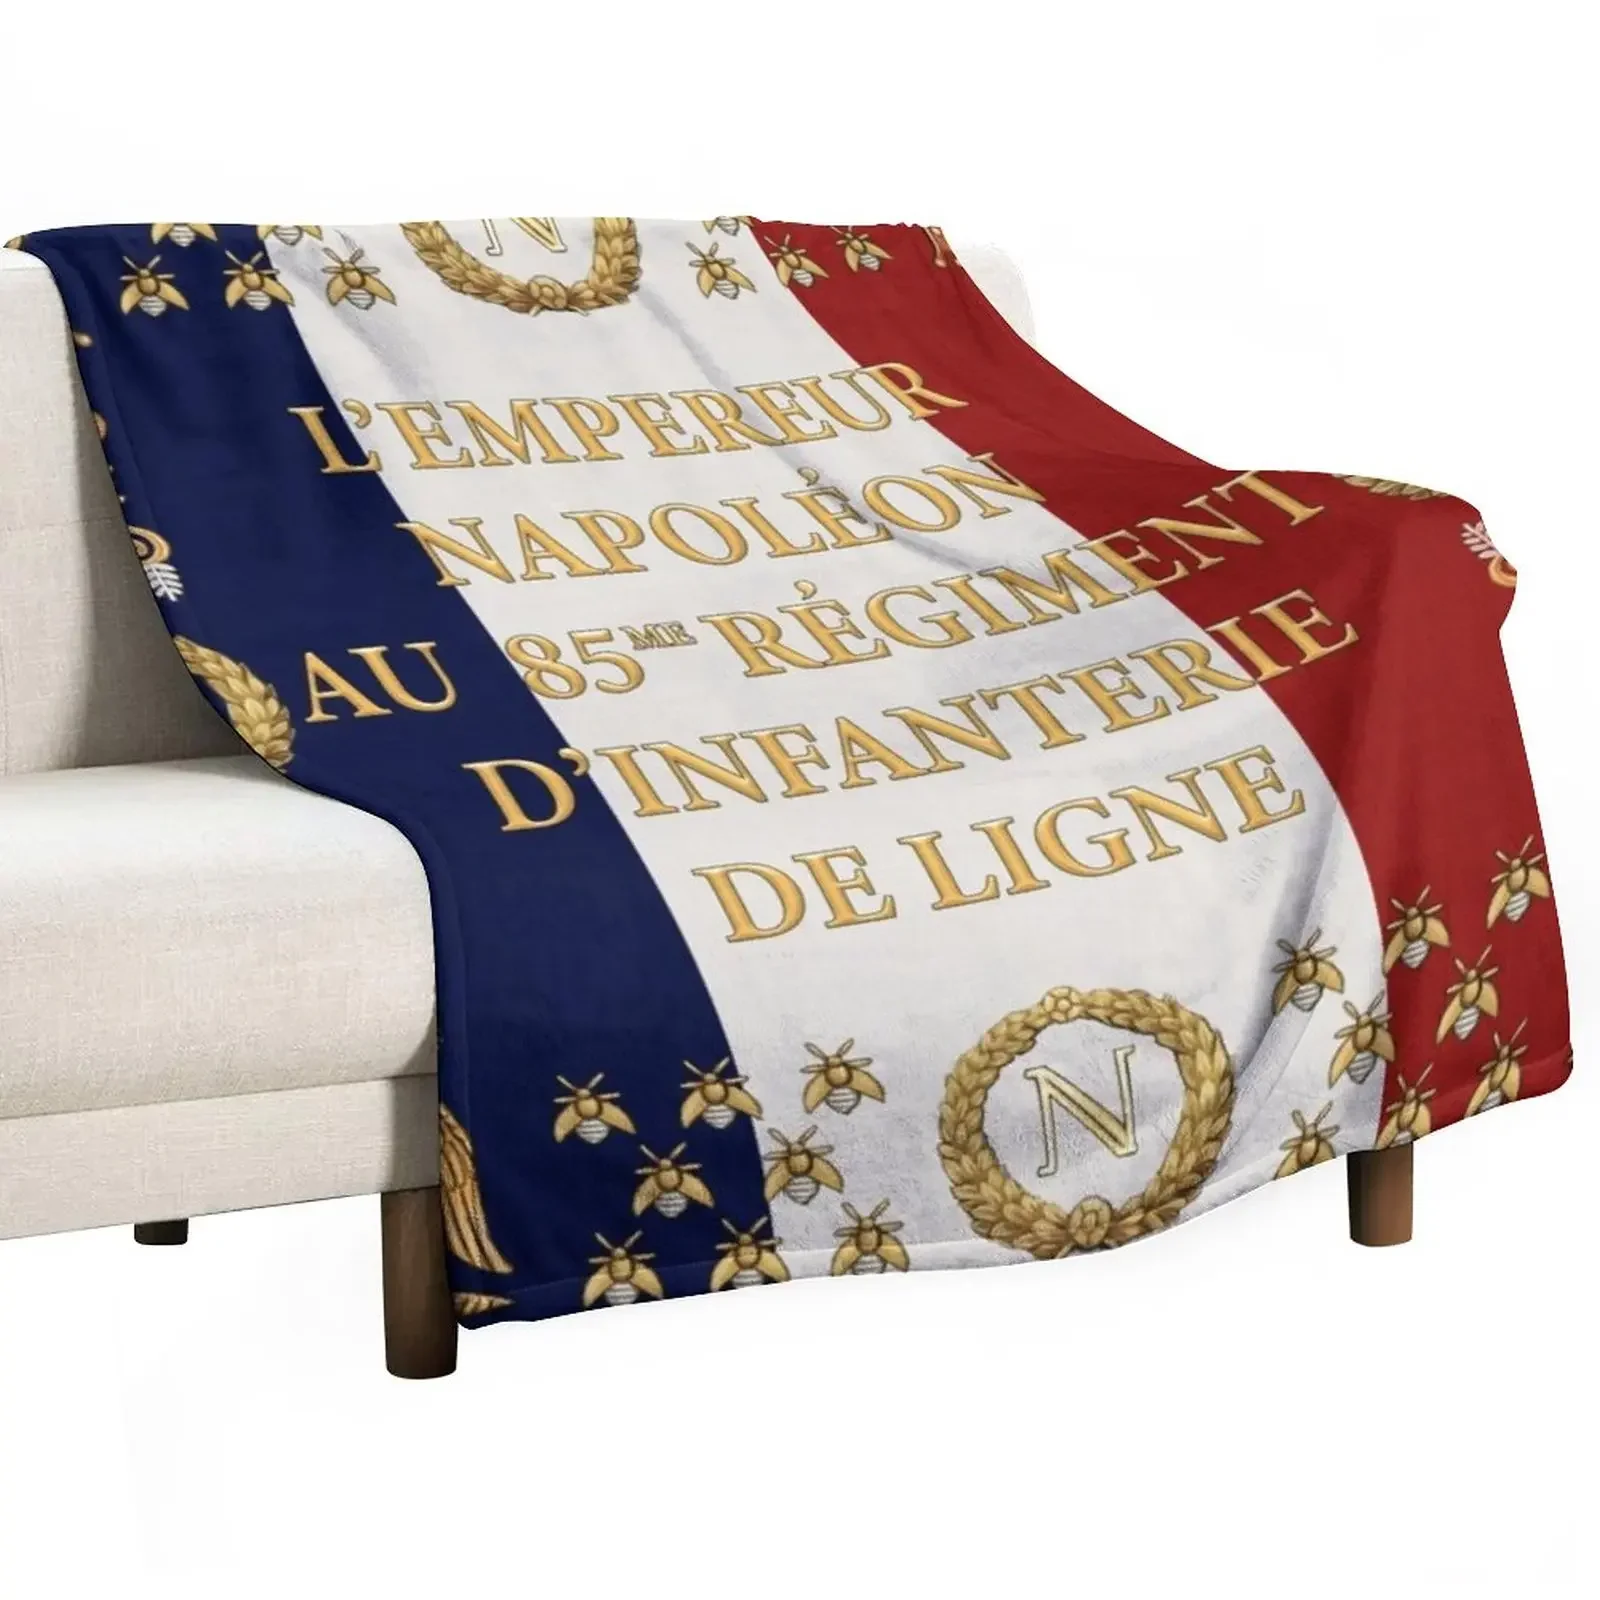 

Одеяло из плюша для младенцев, декоративное одеяло с флагом наполеонического французского 85-го ряда, очень большой размер, индивидуальный подарок